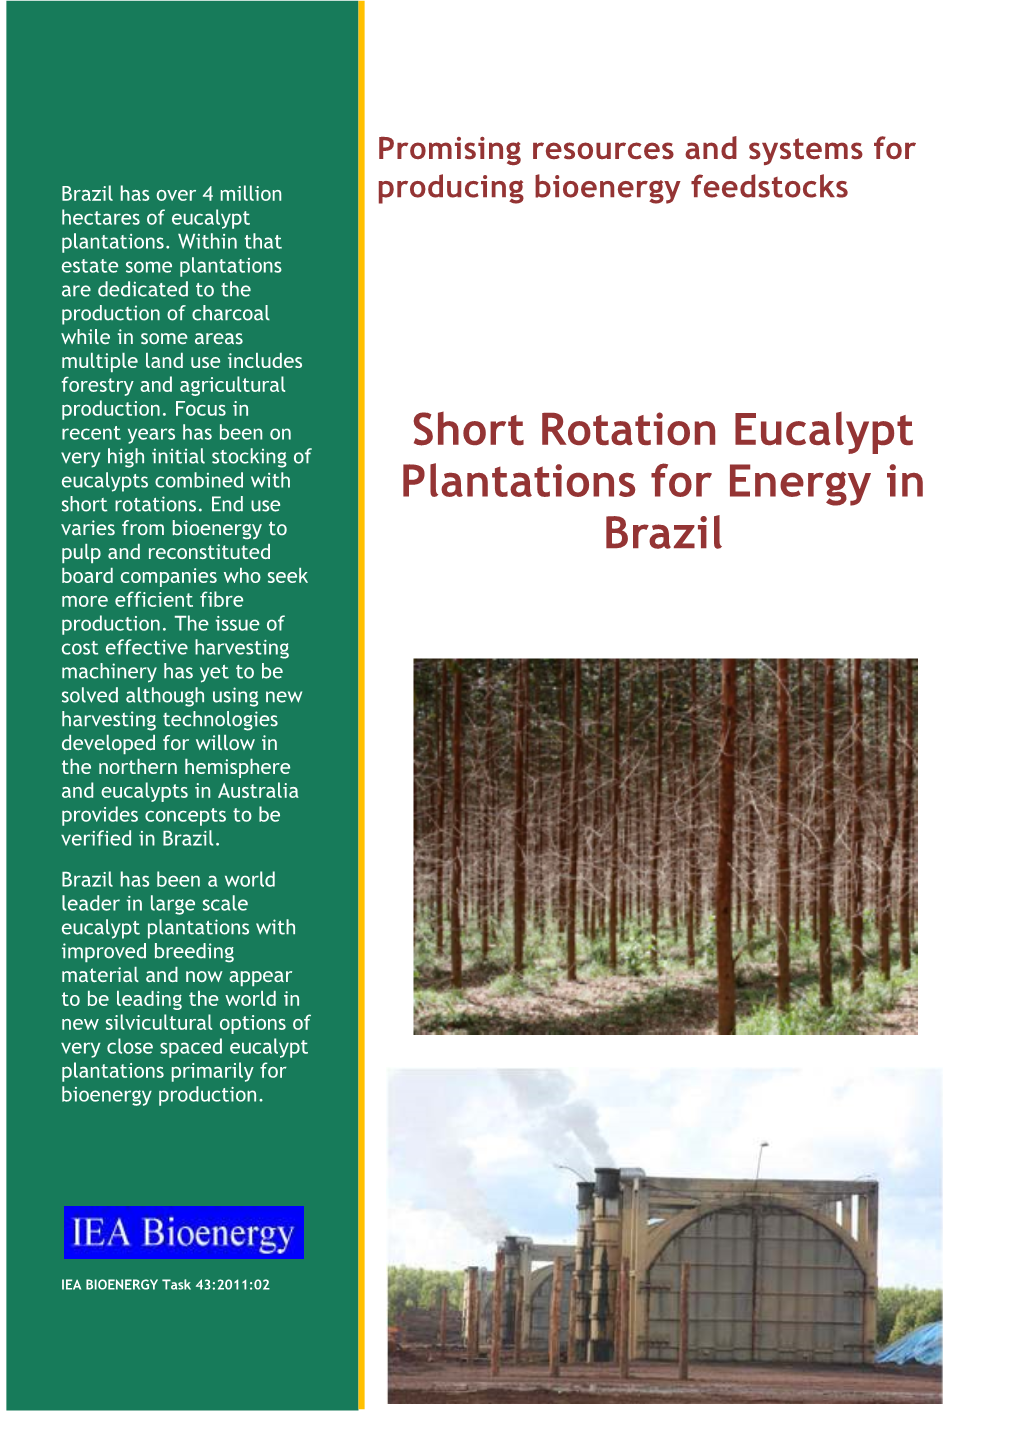 Short Rotation Eucalypt Plantations for Energy in Brazil